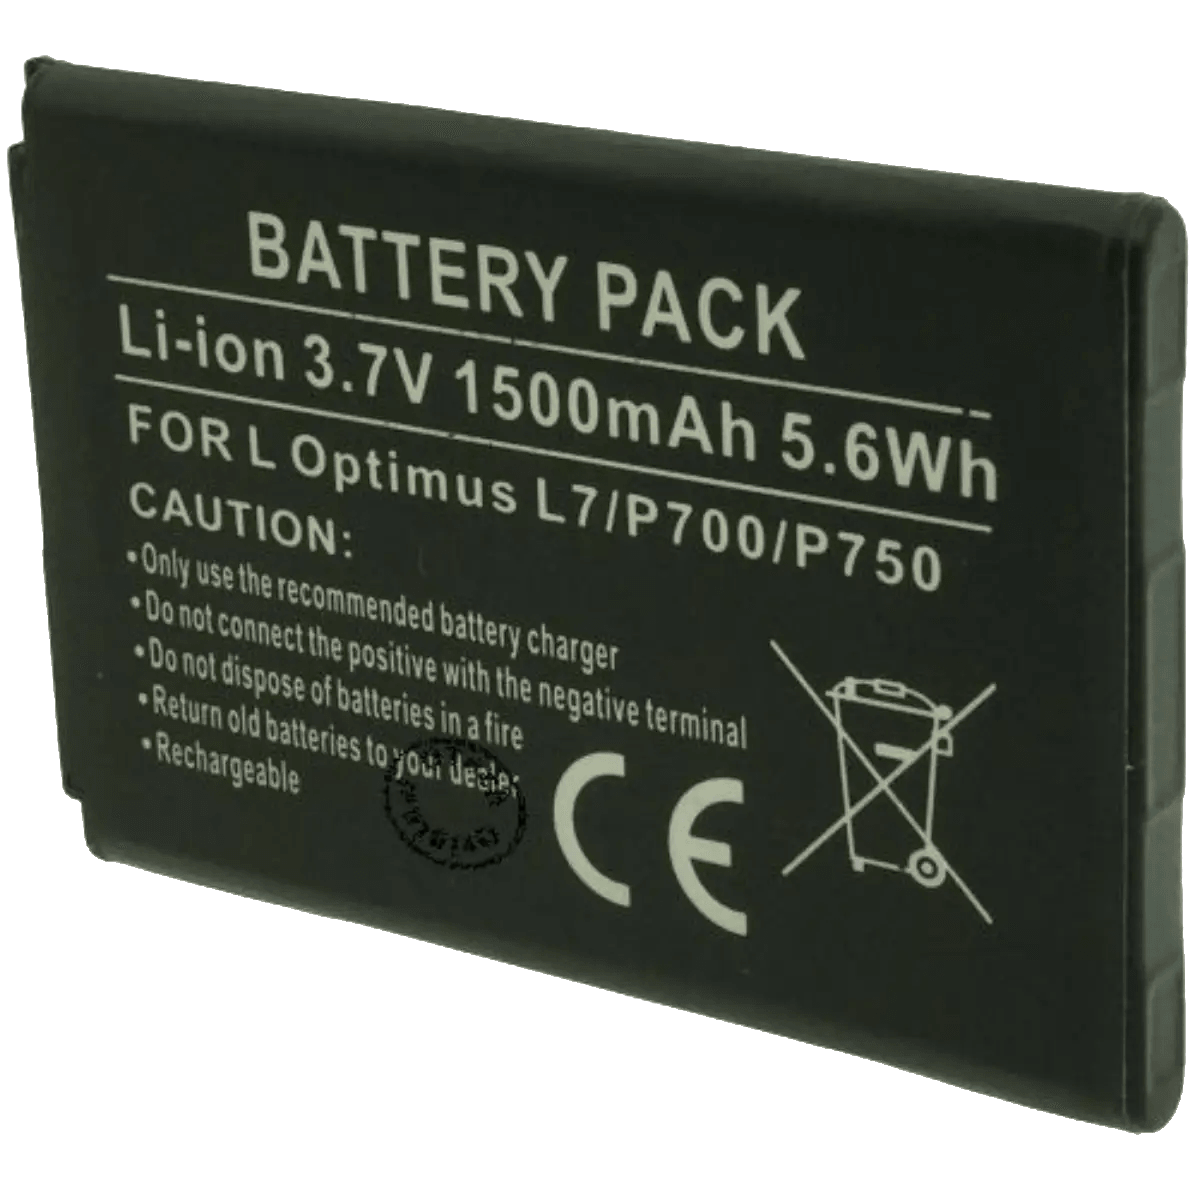 Batterie pour téléphone portable LG L7, MS770, P700, P750, E460